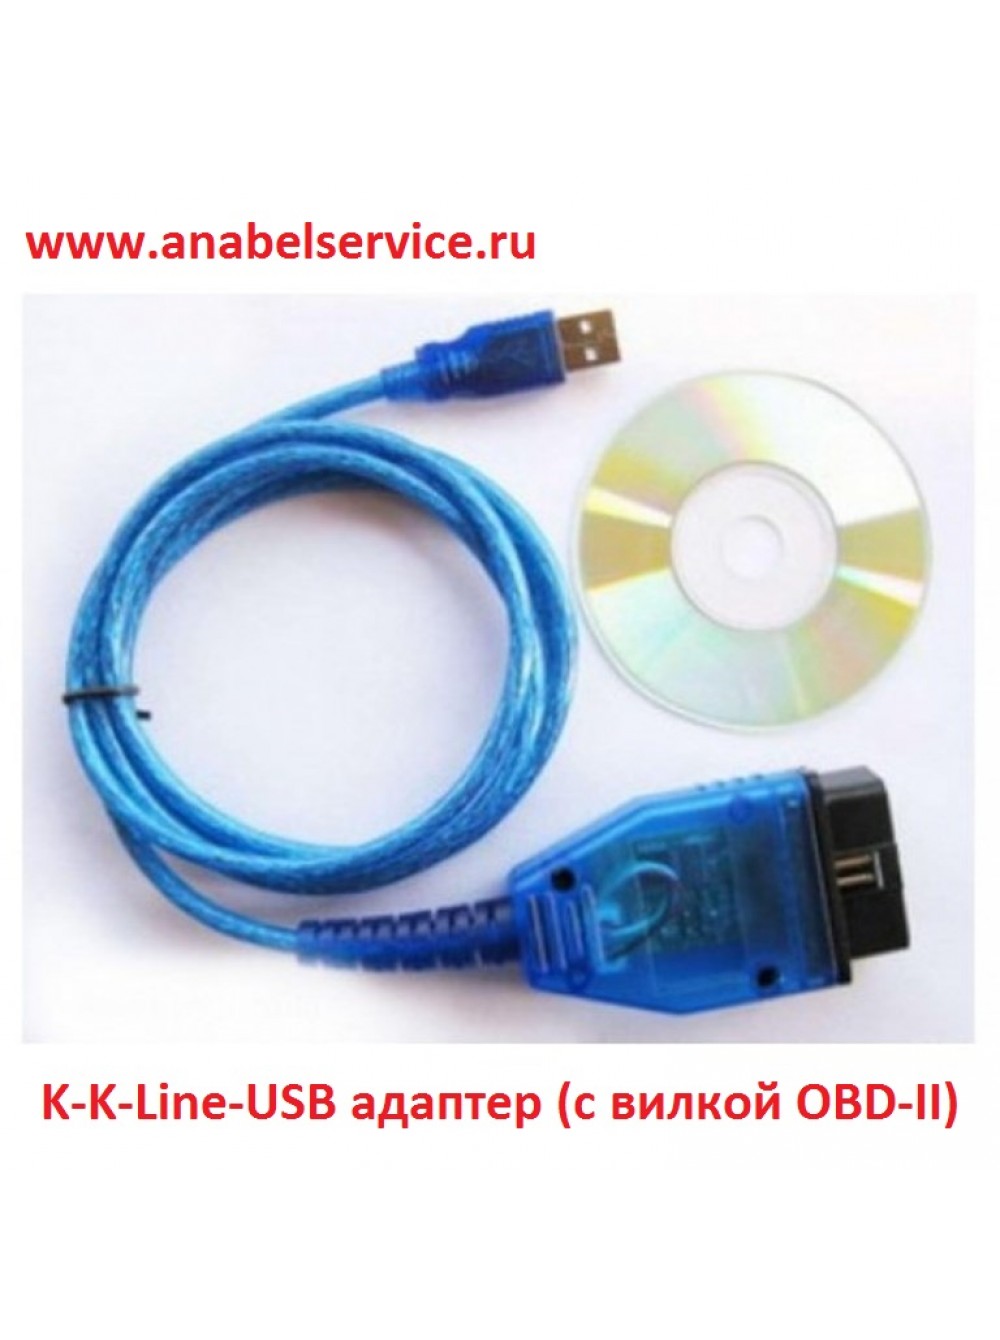 Купить K-K-Line-USB адаптер (с вилкой OBD-II) по лучшей цене  .